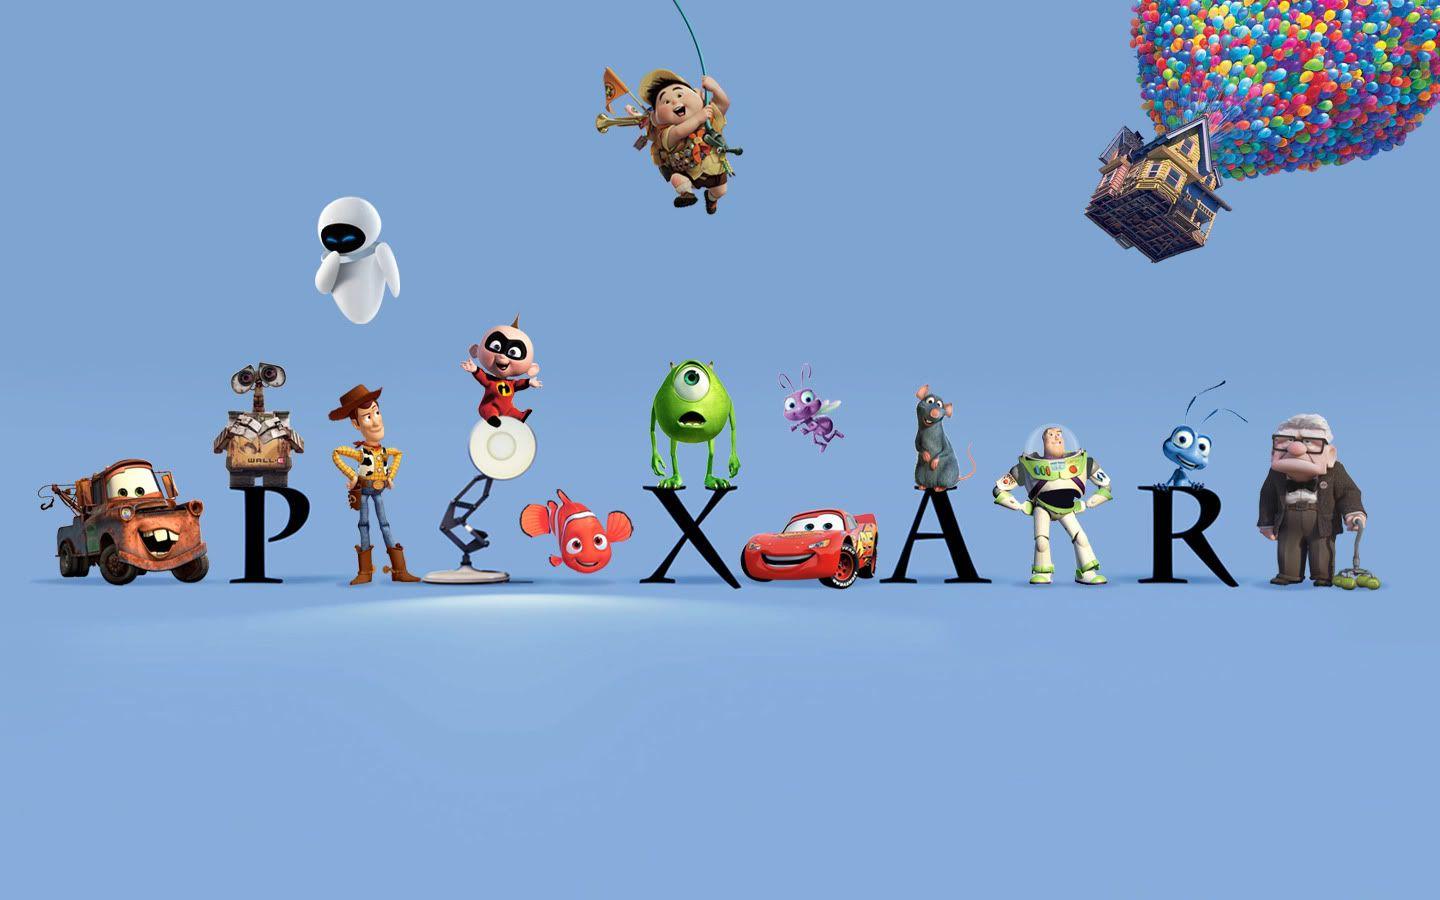 Disney Pixar Animation Studios Logo - Pixar Animation Studios | Pixar Wiki | FANDOM powered by Wikia